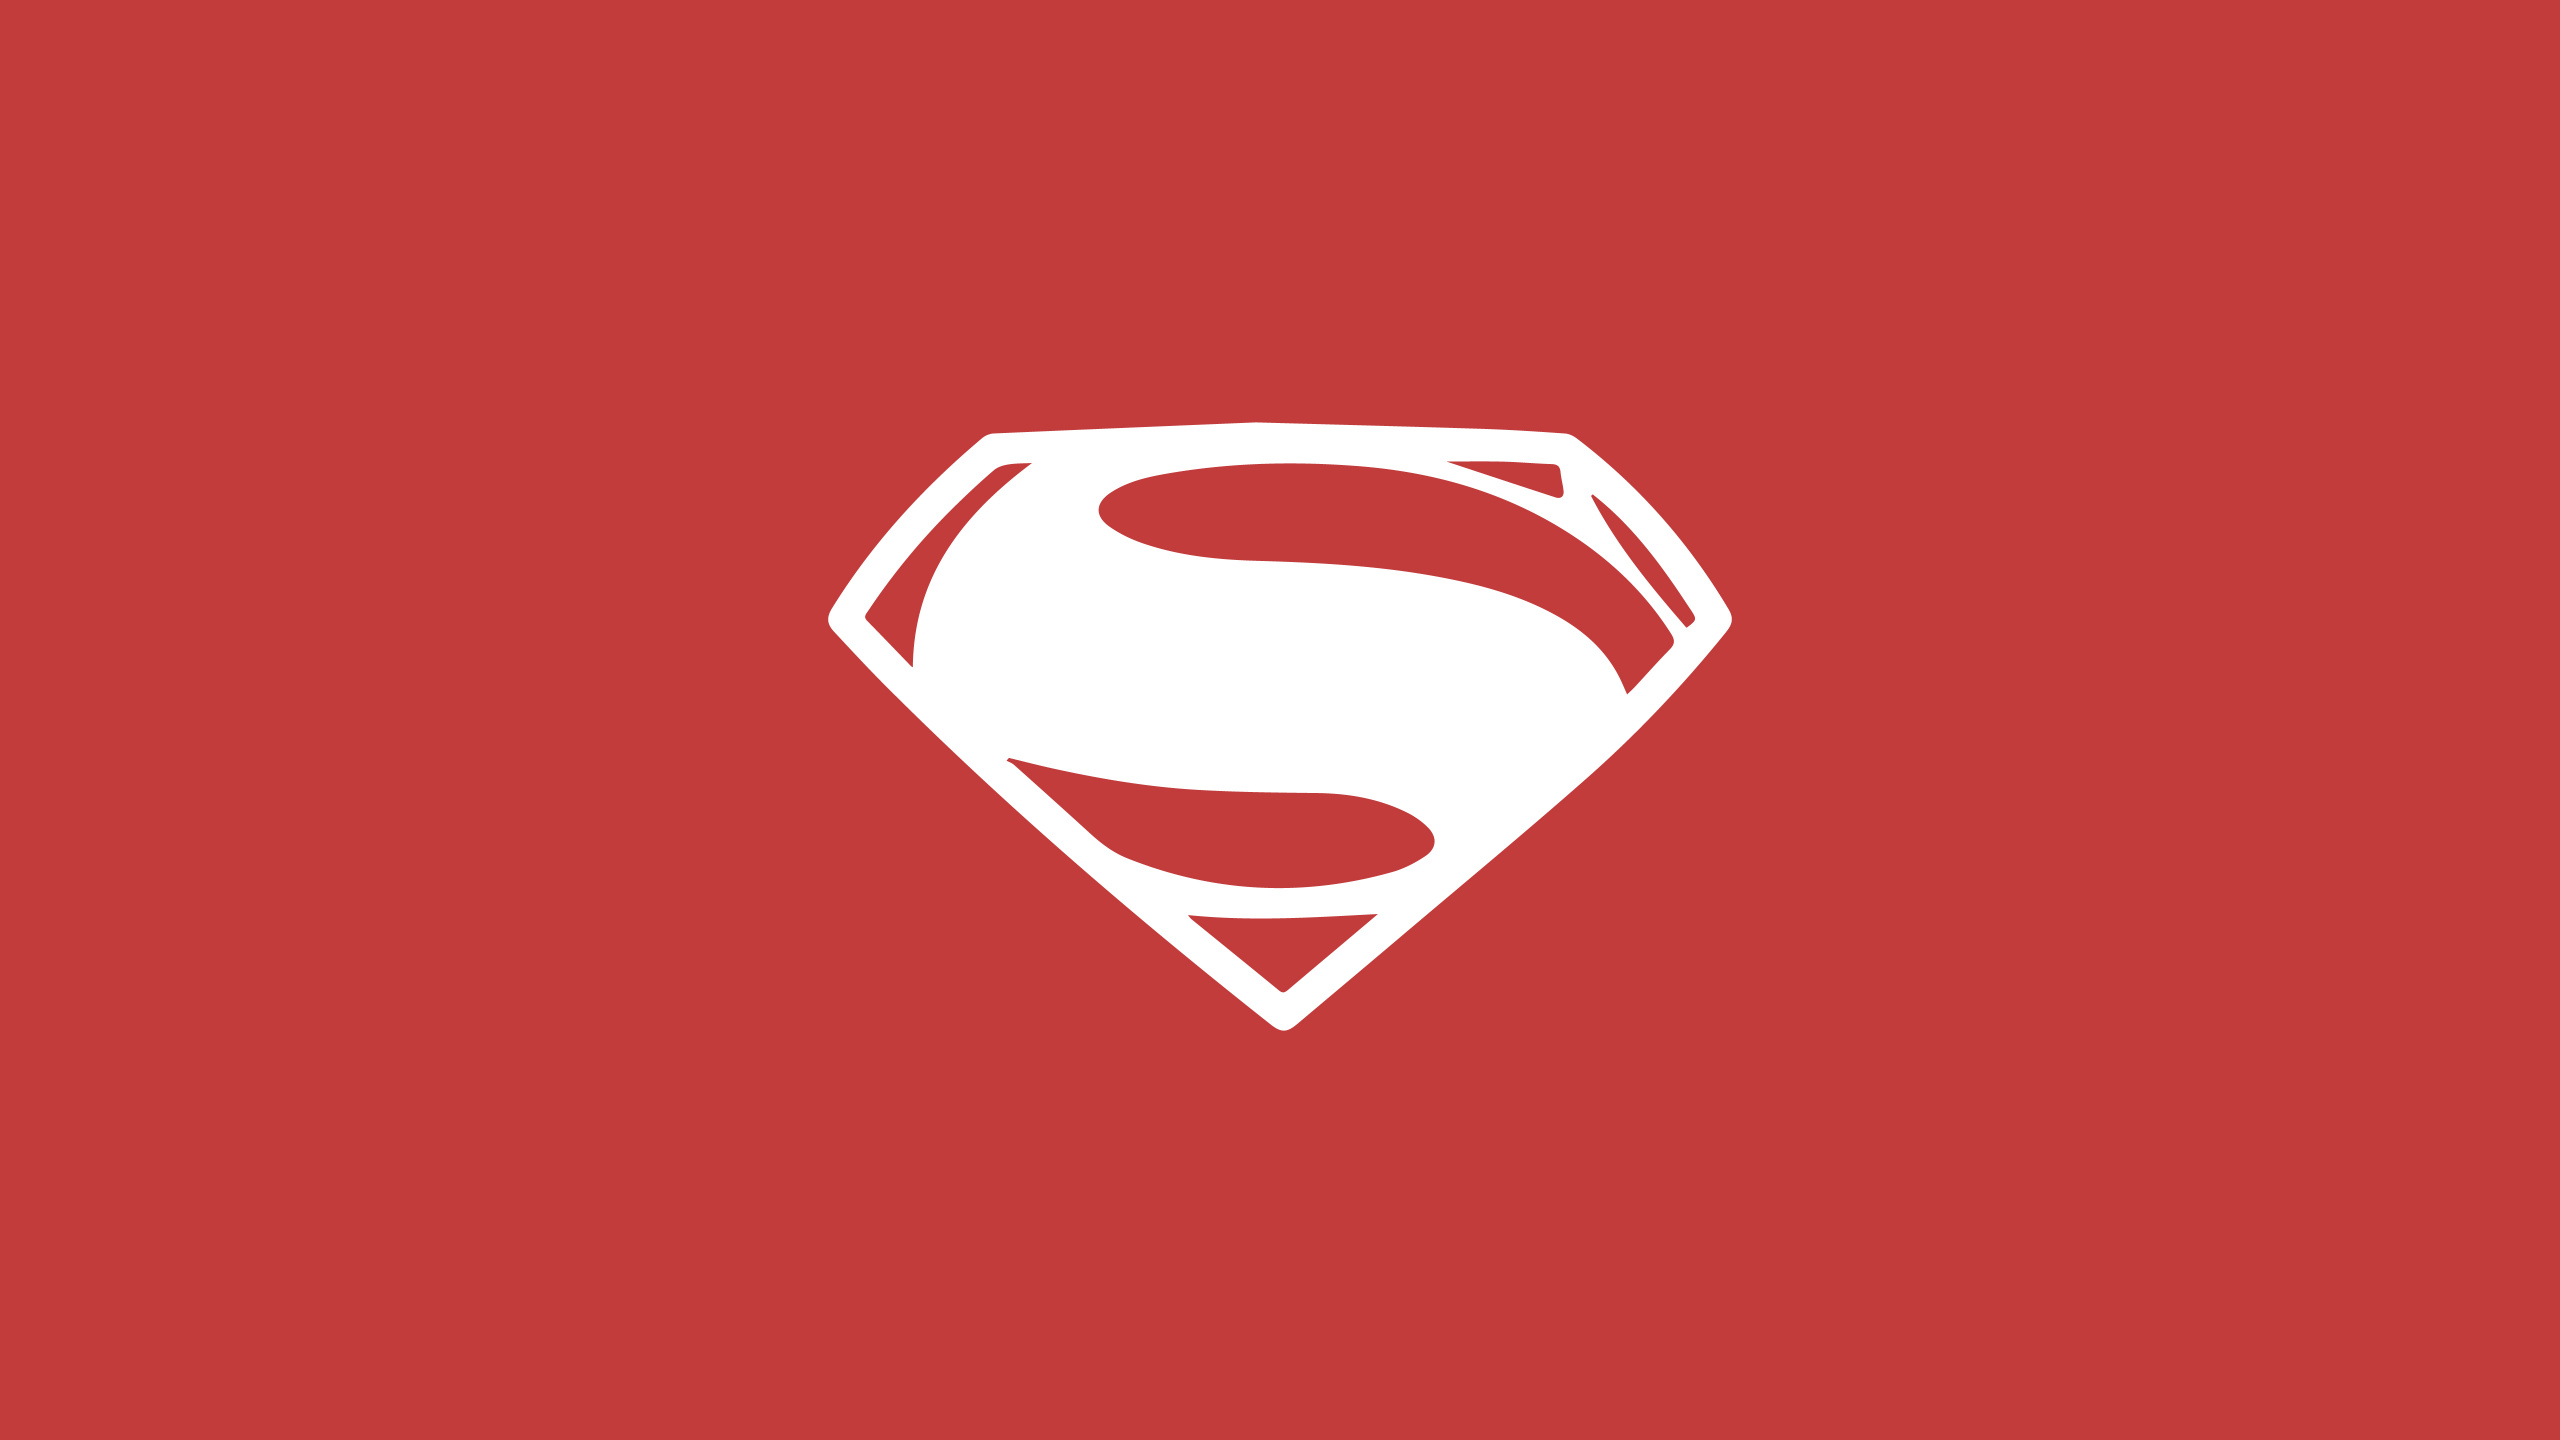 超人的标志, 红色的, 心脏, Dc漫画, 超级英雄 壁纸 2560x1440 允许